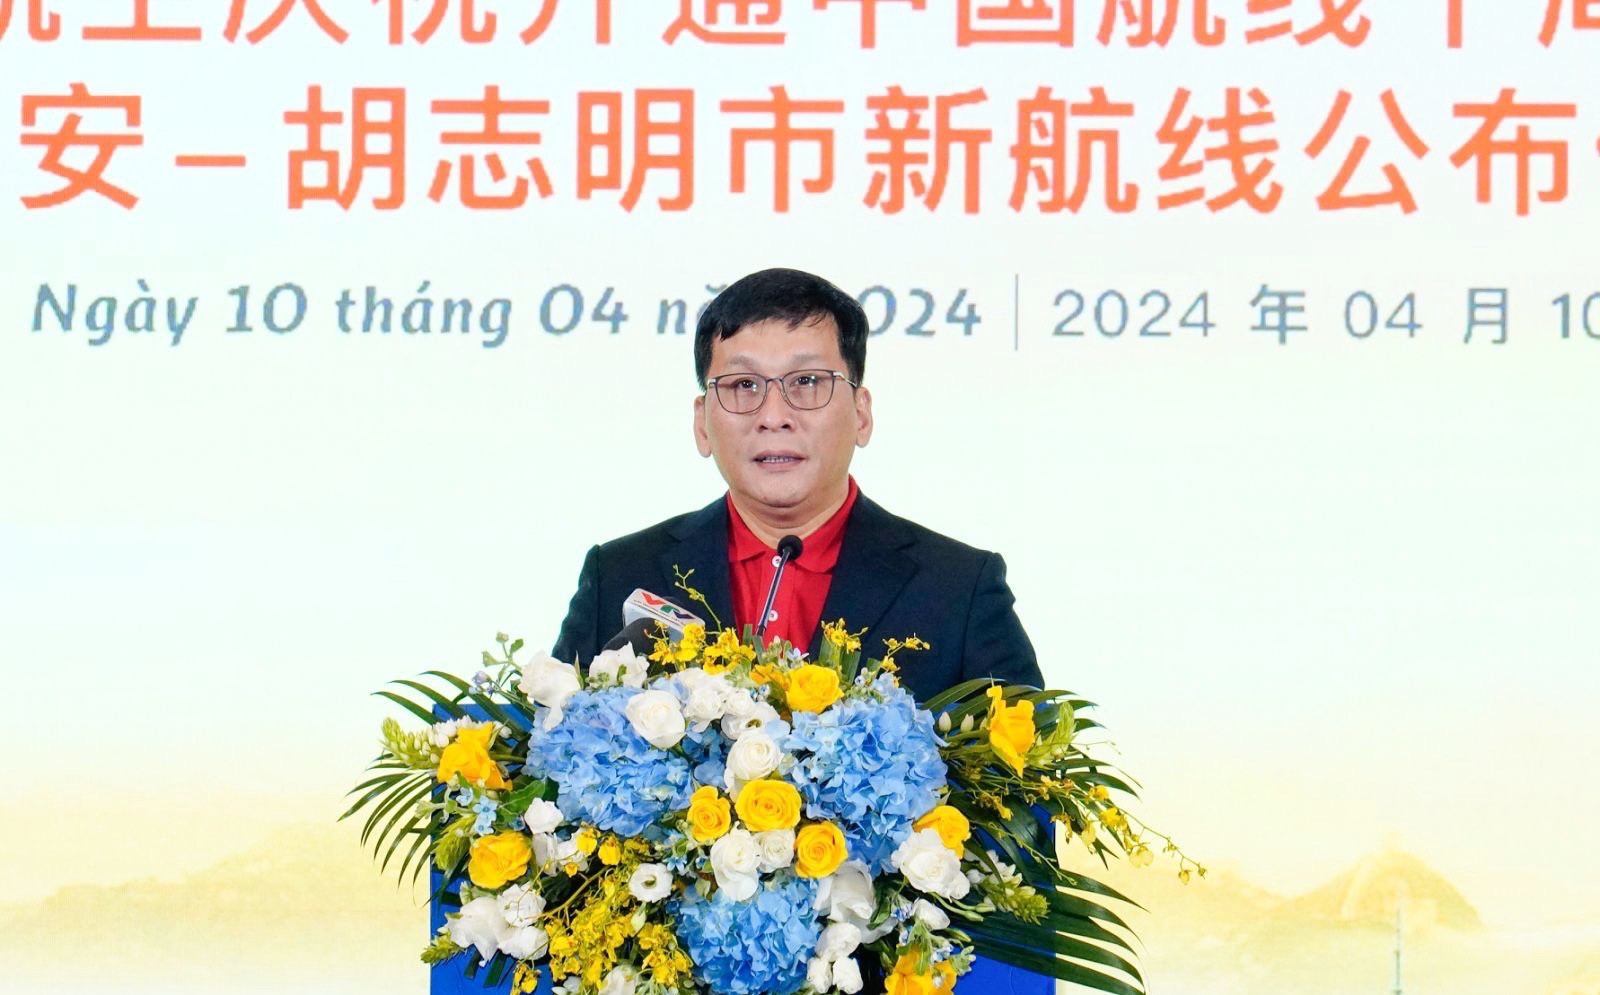 Vietjet công bố đường bay mới TP. Hồ Chí Minh – Tây An (Trung Quốc) - 3